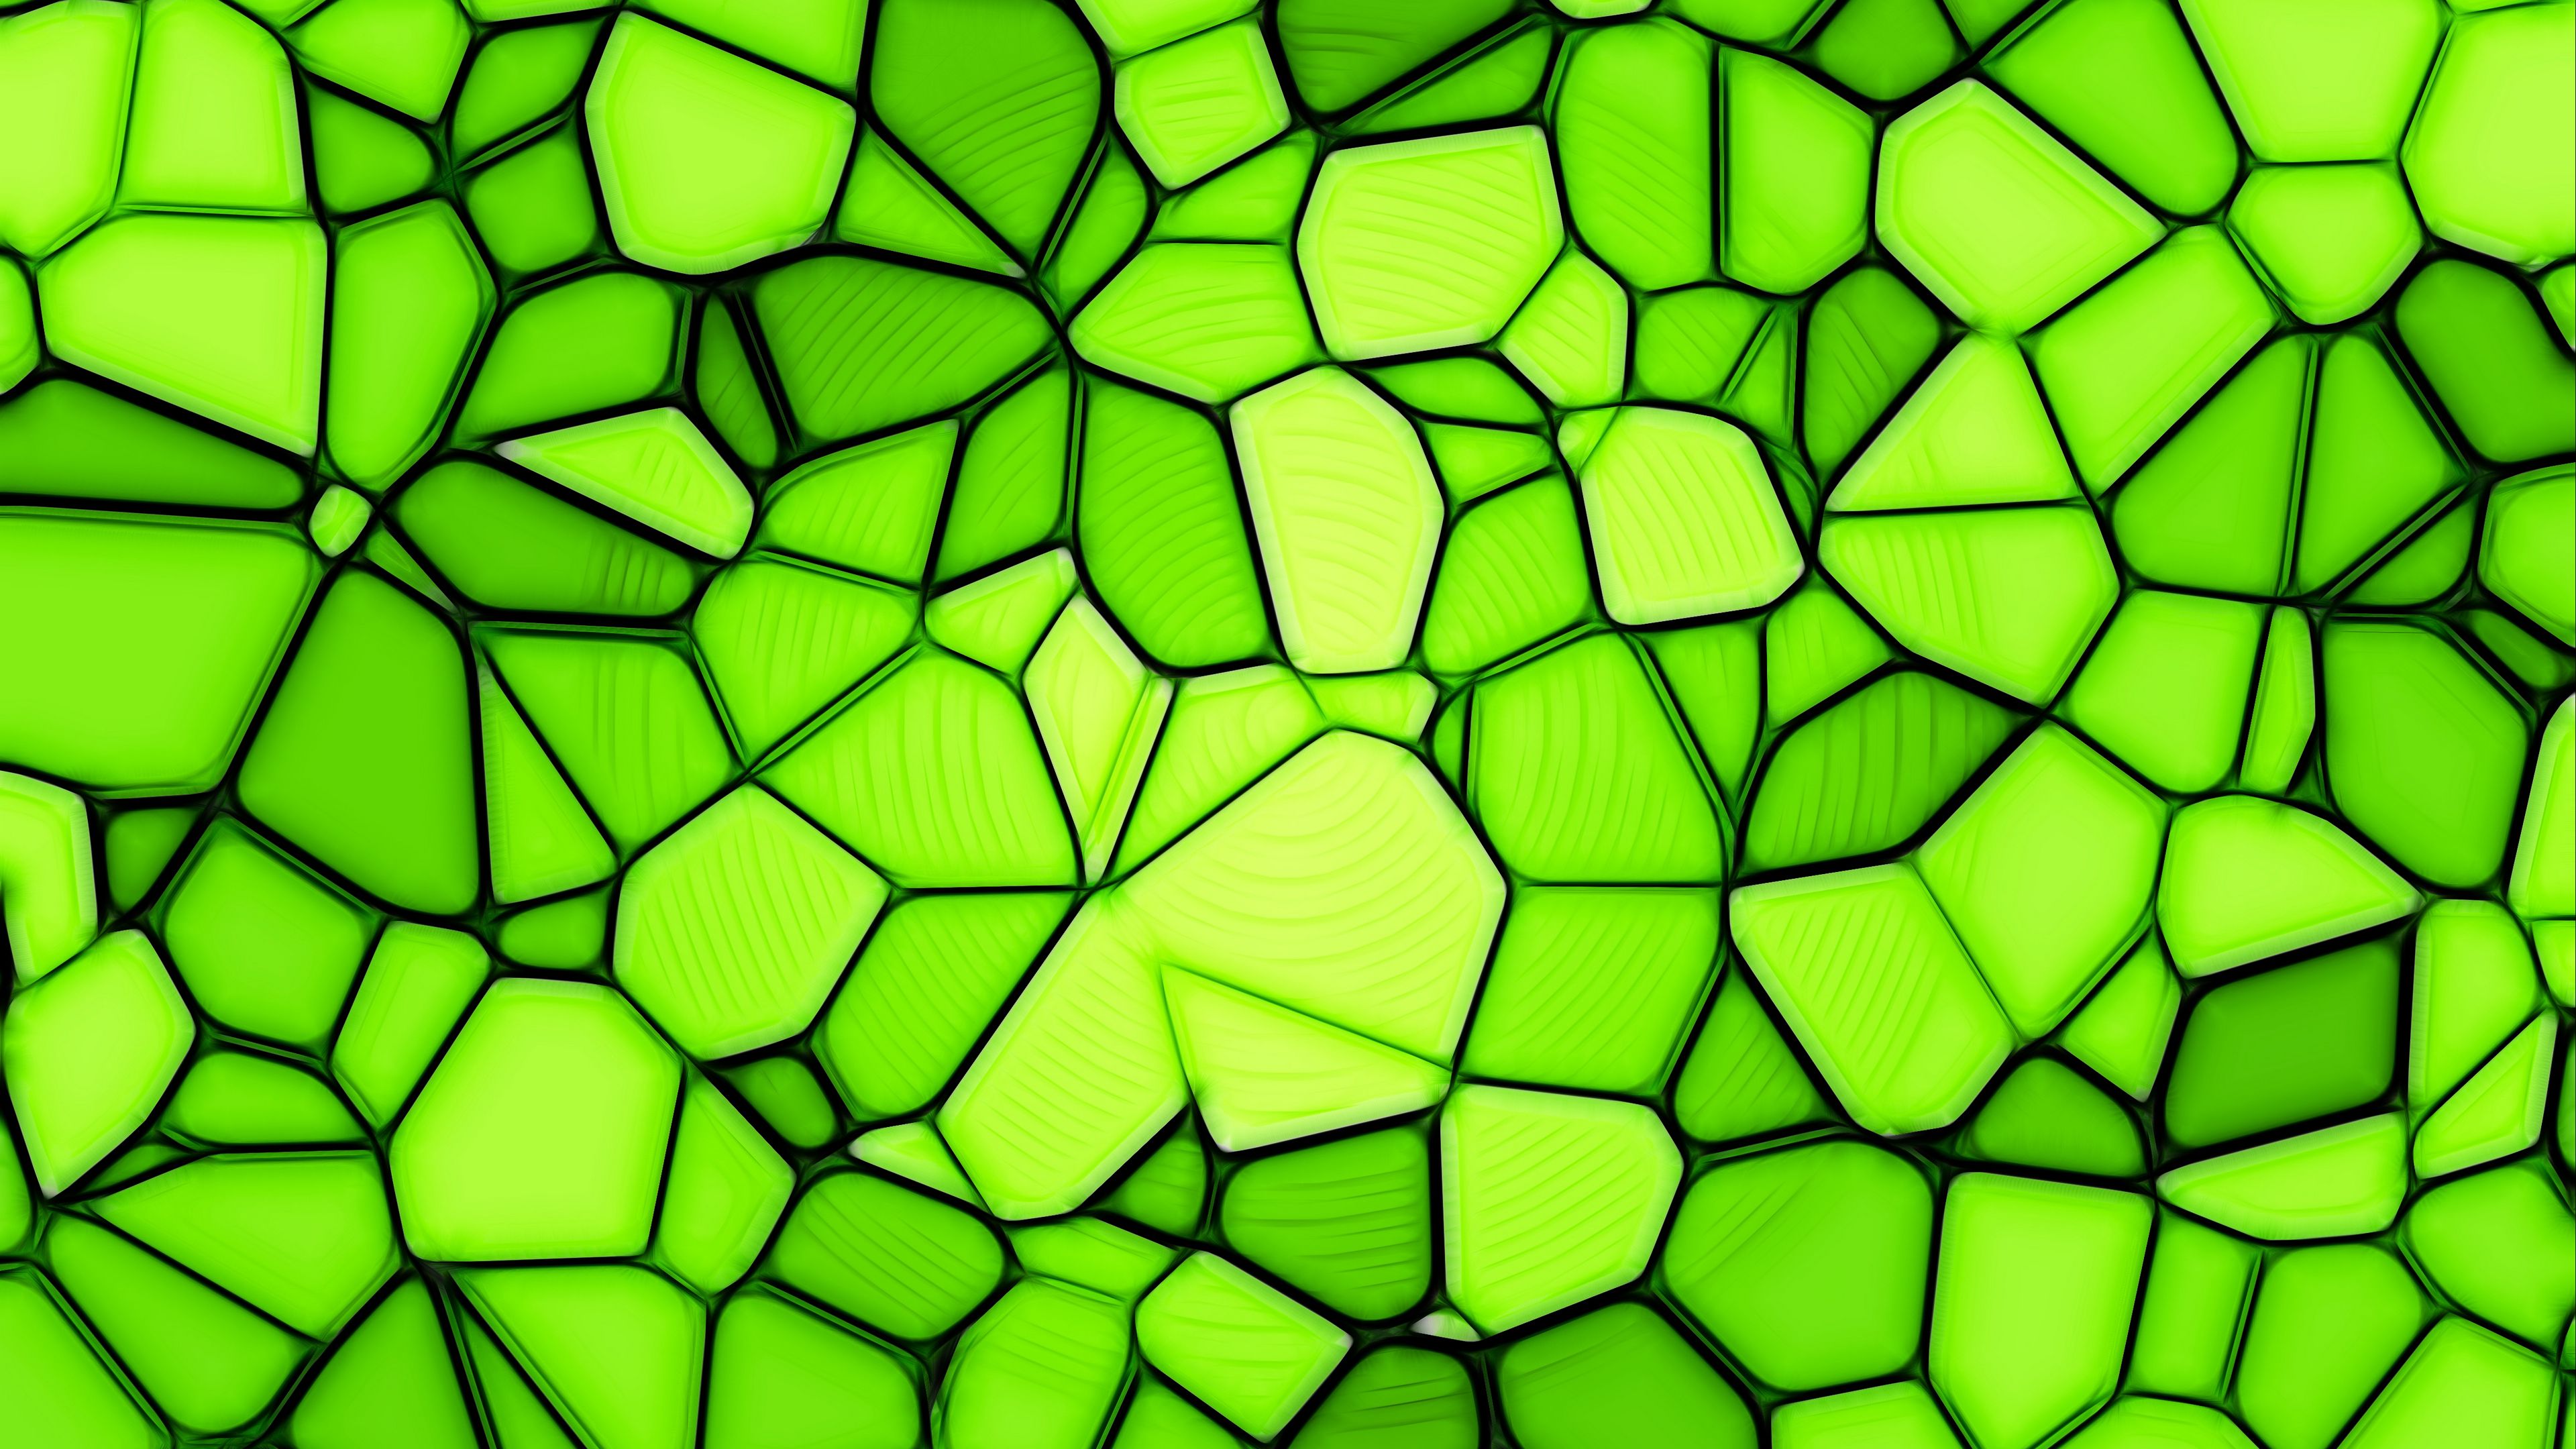 текстура, ярко-зелёный фон, мозаика, орнамент, геометрические фигуры, многогранники, 3840х2160, 4к